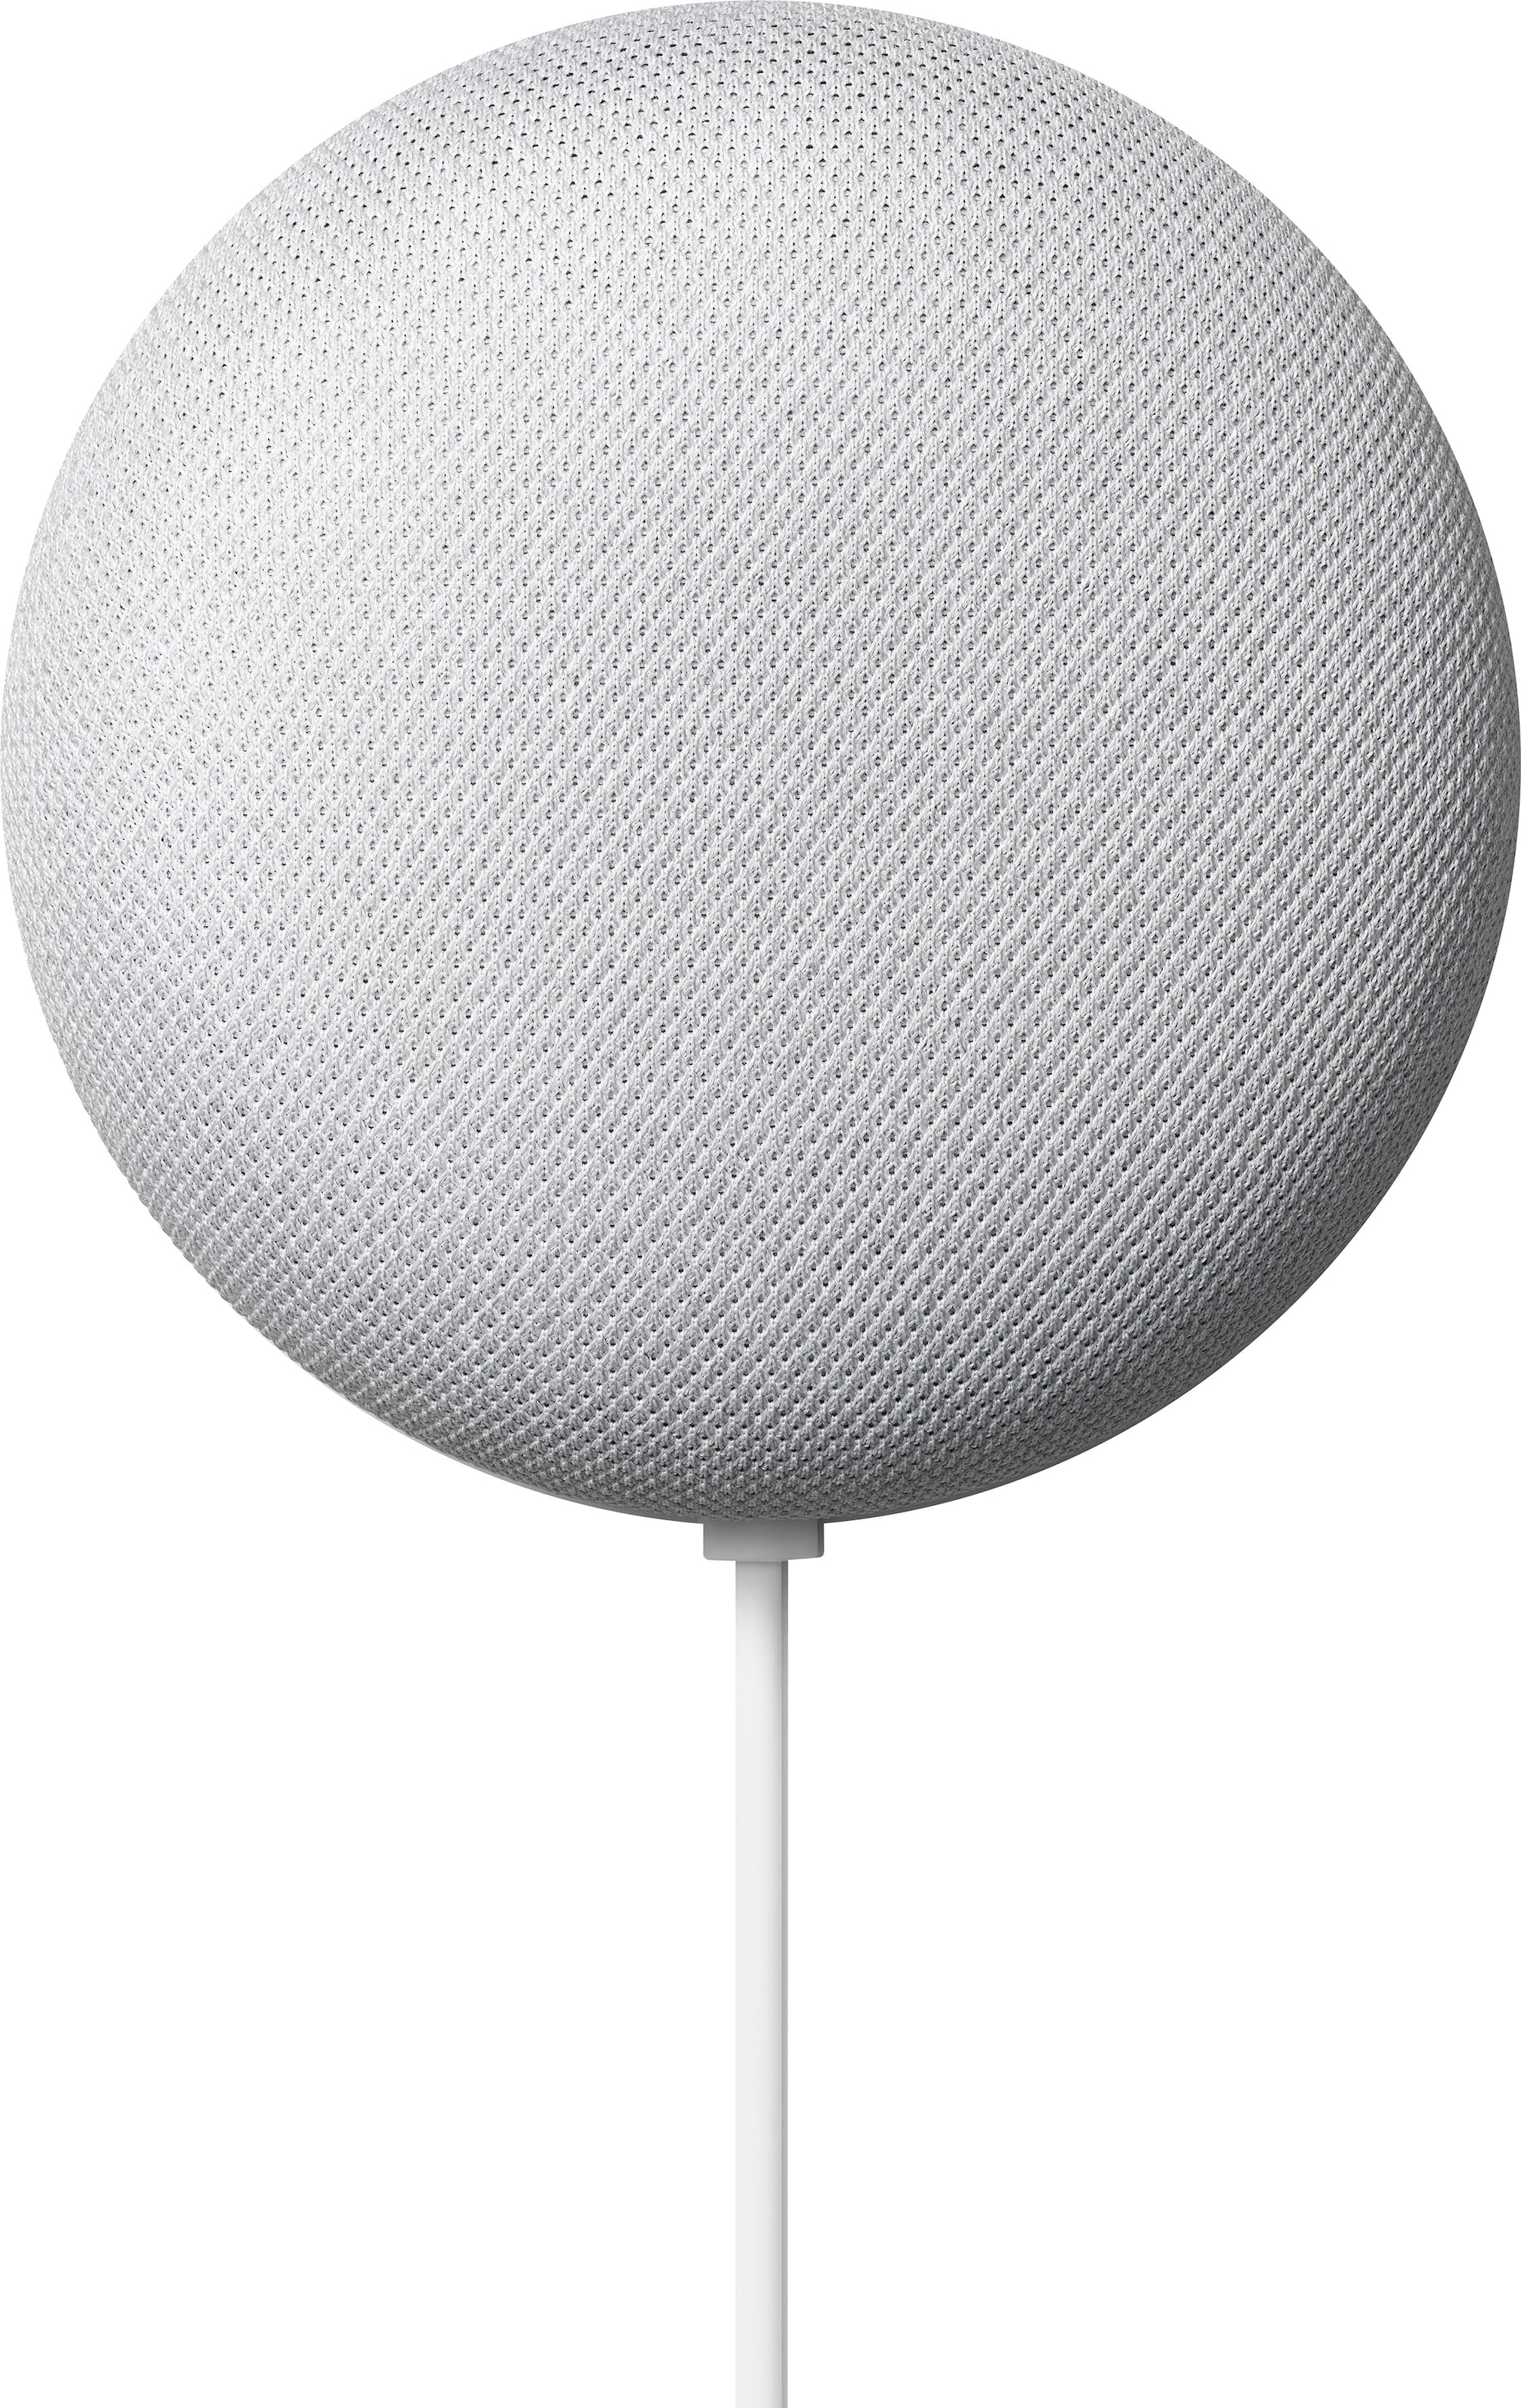 Google Smart Speaker »Nest Mini«